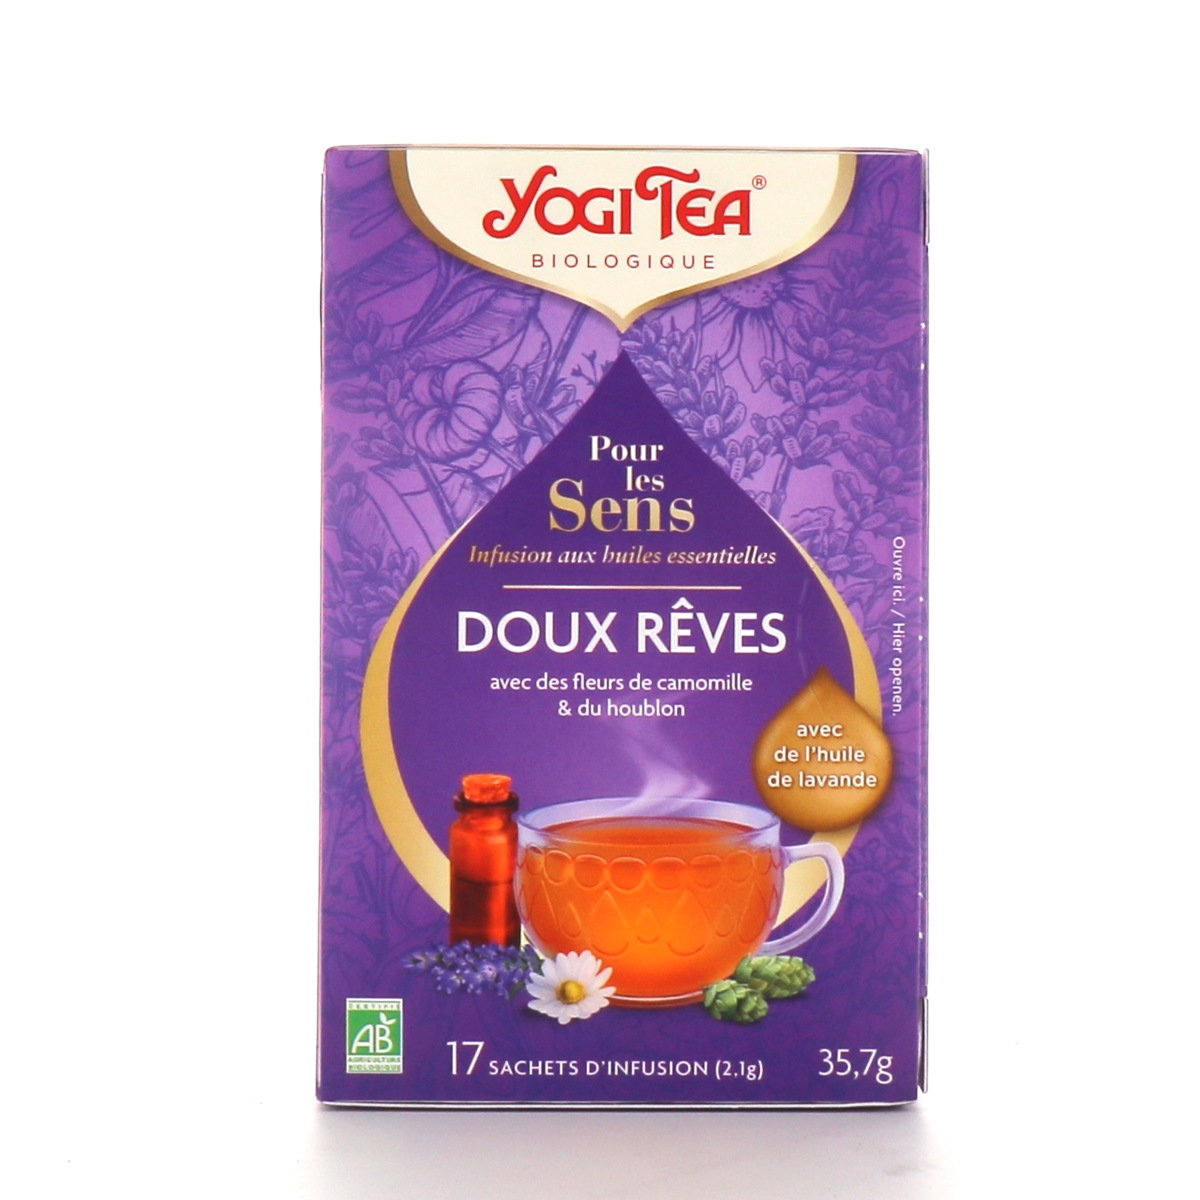 Thé Yogi, soulagement du stress au miel et à la lavande, sans caféine, 16  sachets de thé, 1.